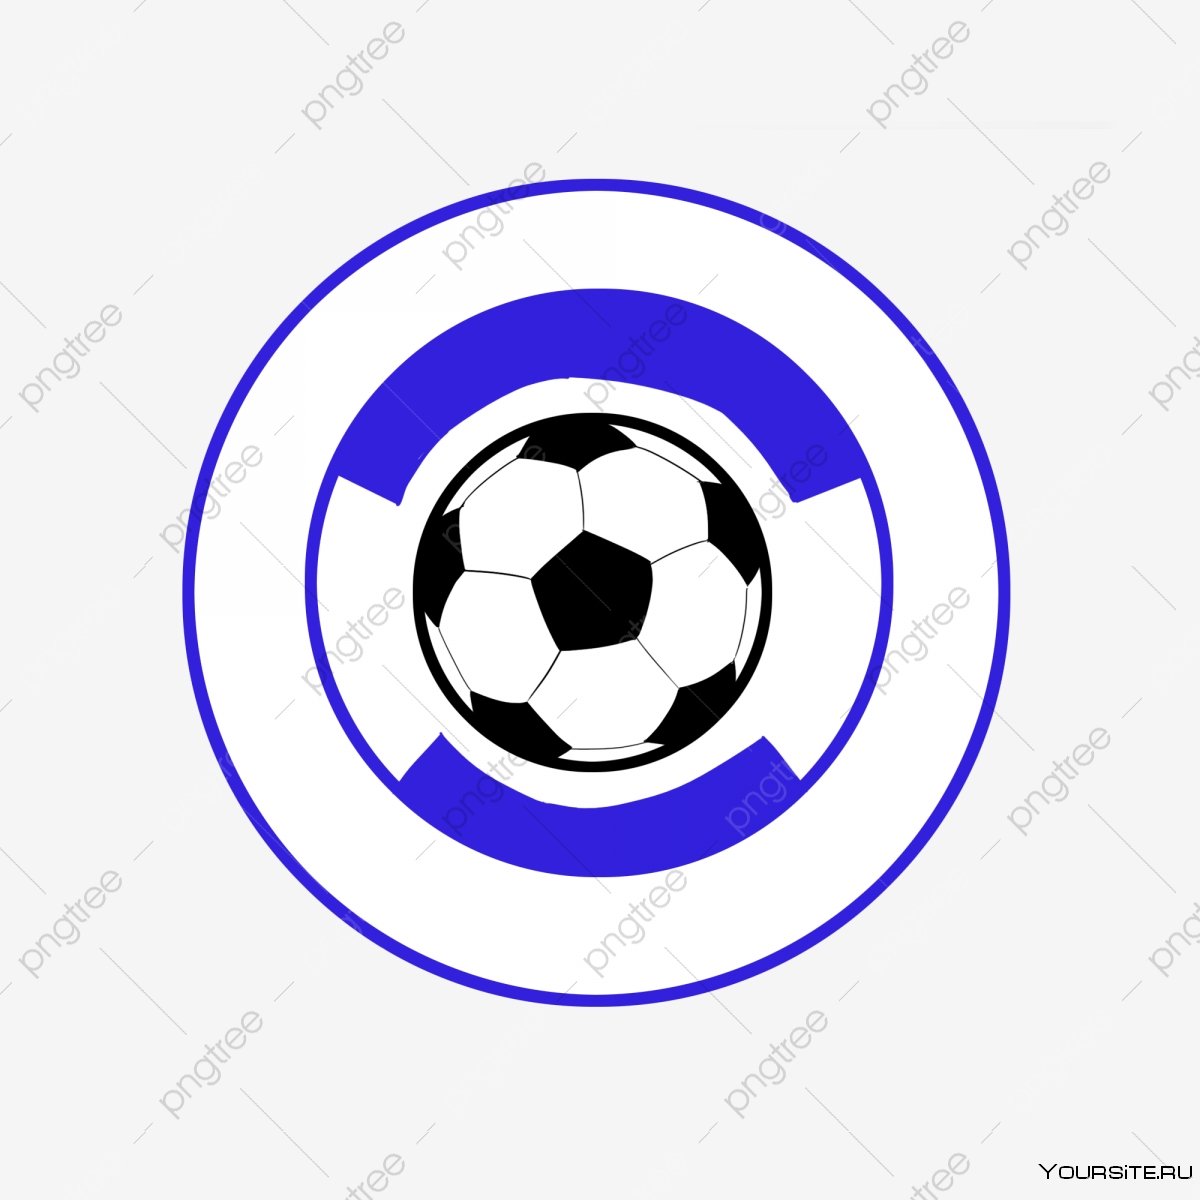 Фон для логотипа футбольной команды